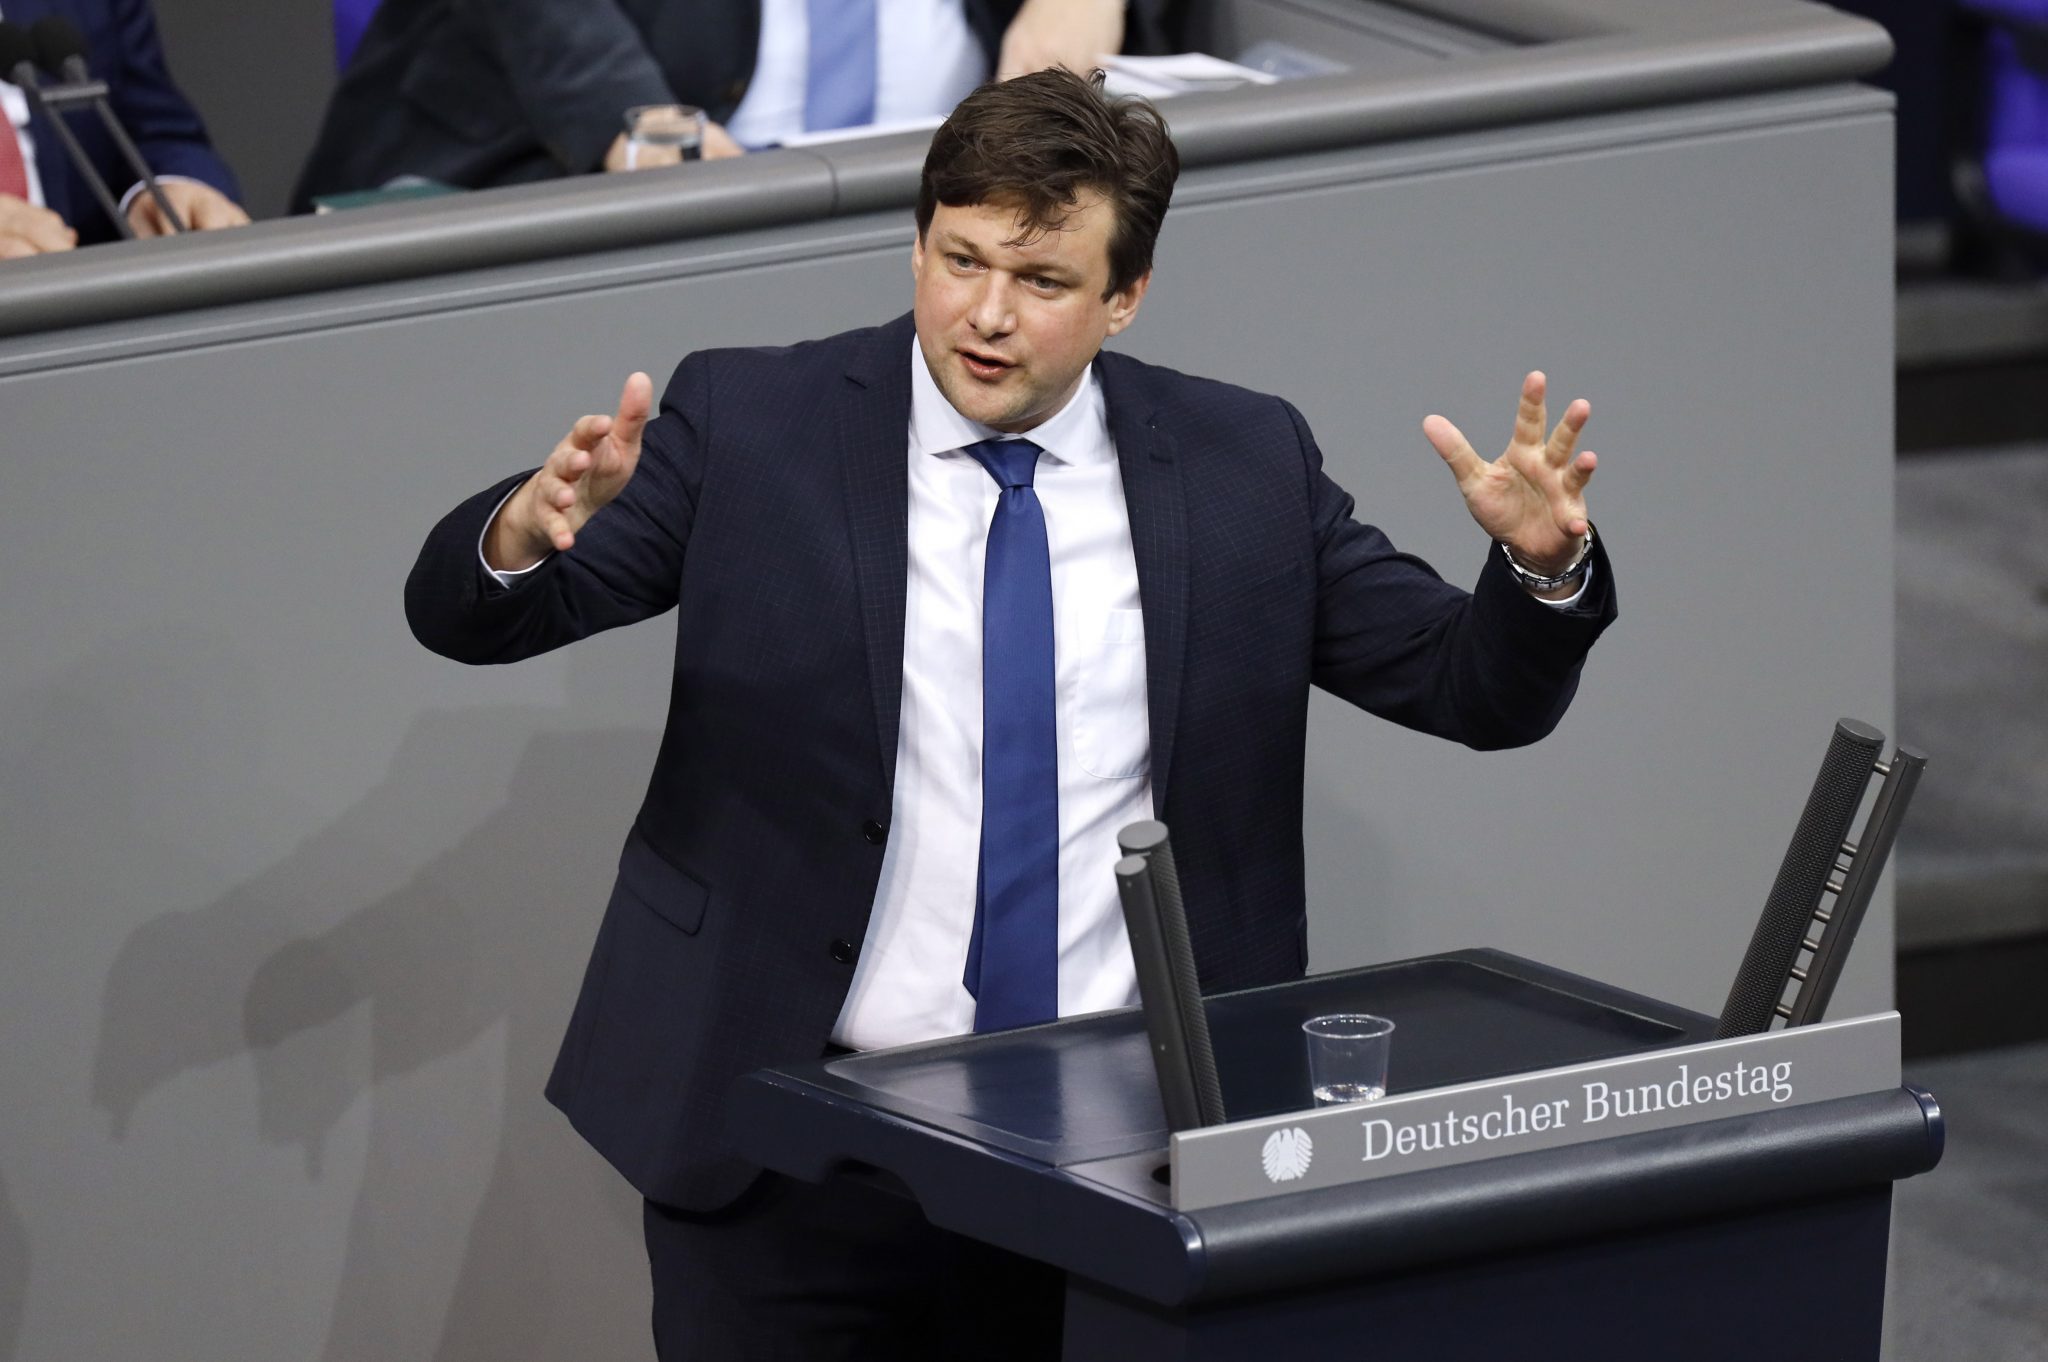 Der CSU-Bundestagsabgeordnete Tobias Zech legt seine Ämter nieder Foto: picture alliance / Geisler-Fotopress | Christoph Hardt/Geisler-Fotopres